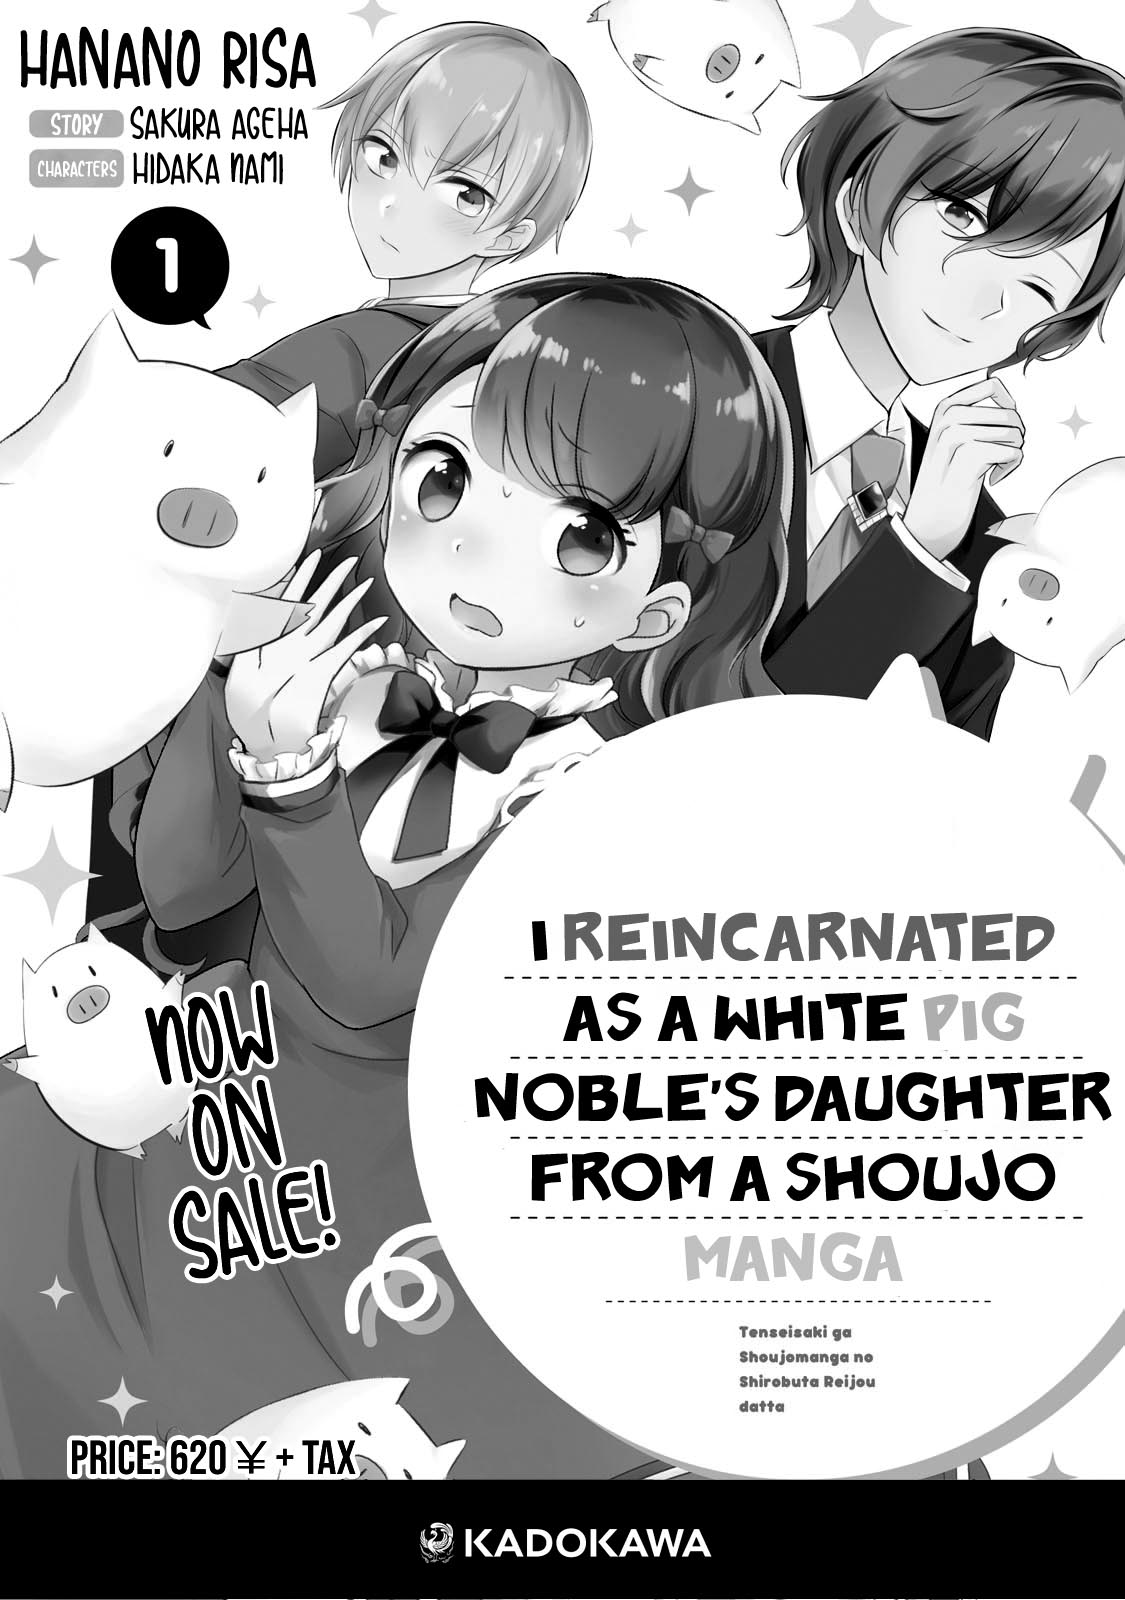 Tensei Saki Ga Shoujo Manga No Shiro Buta Reijou Datta Chapter 9 #9